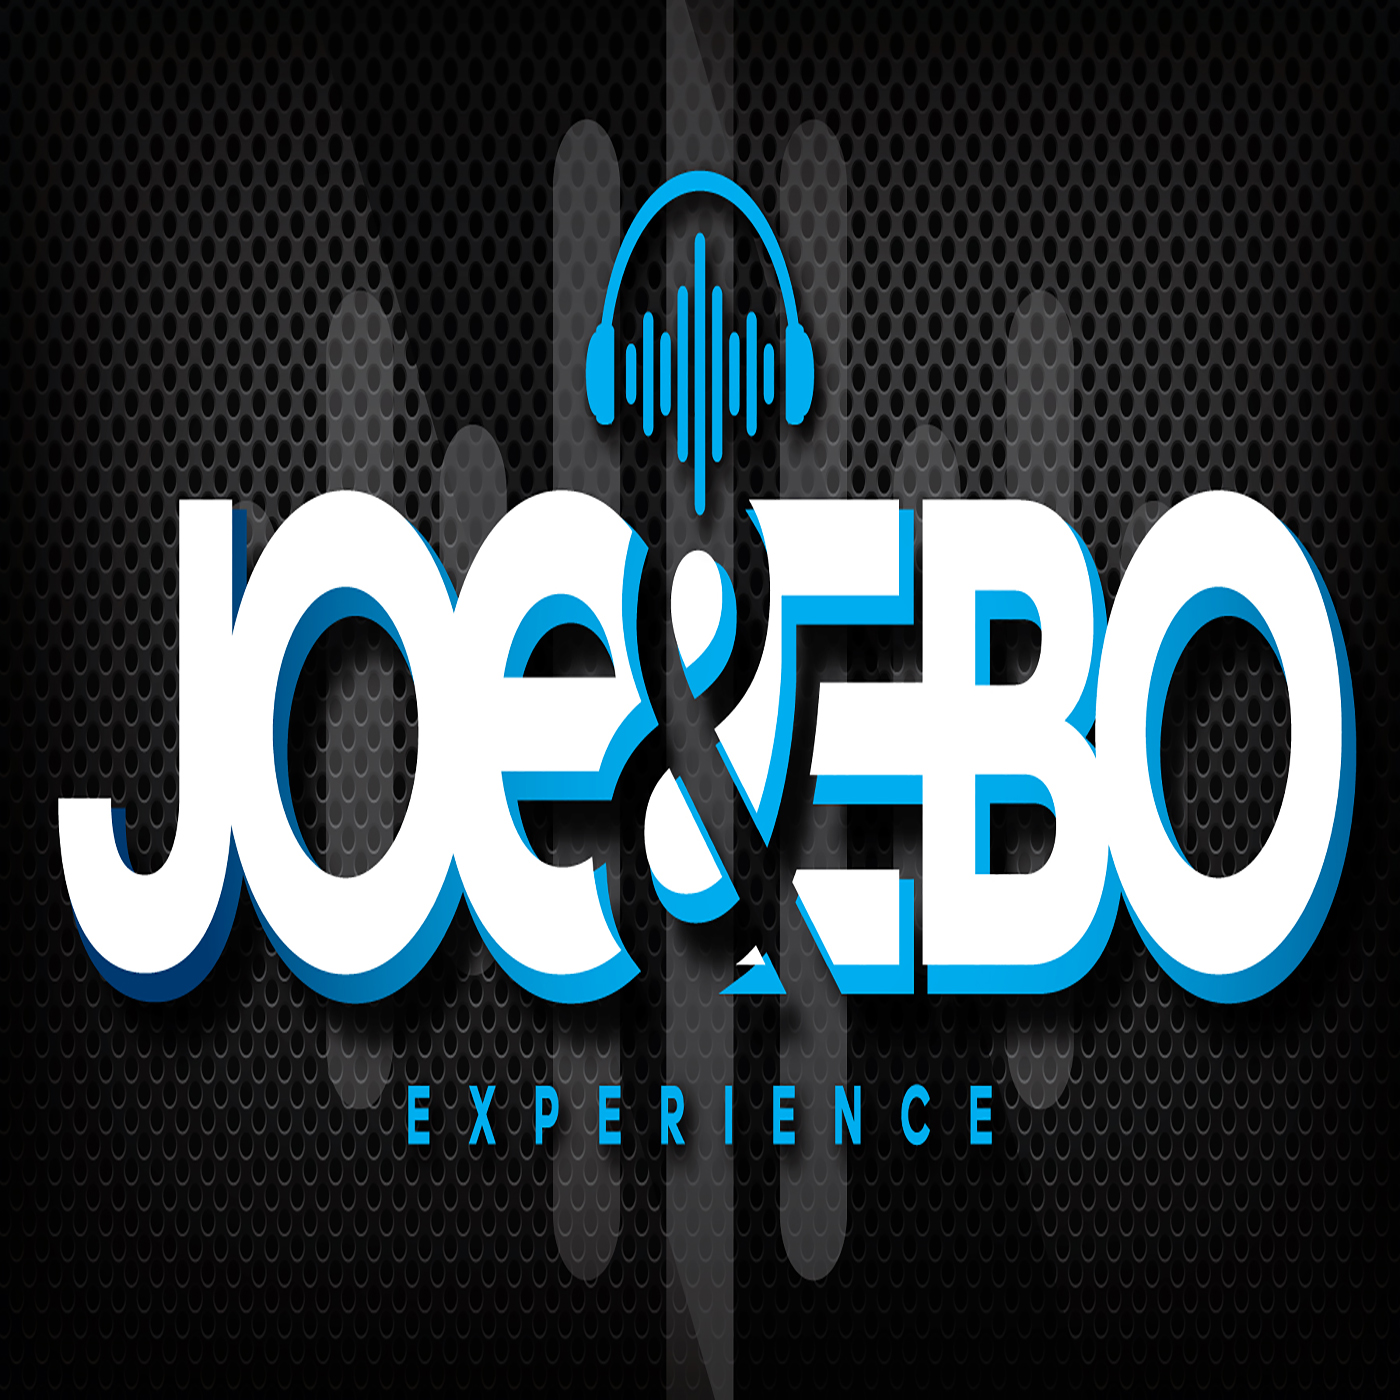 Joe & Ebo Experience: Who's #1?